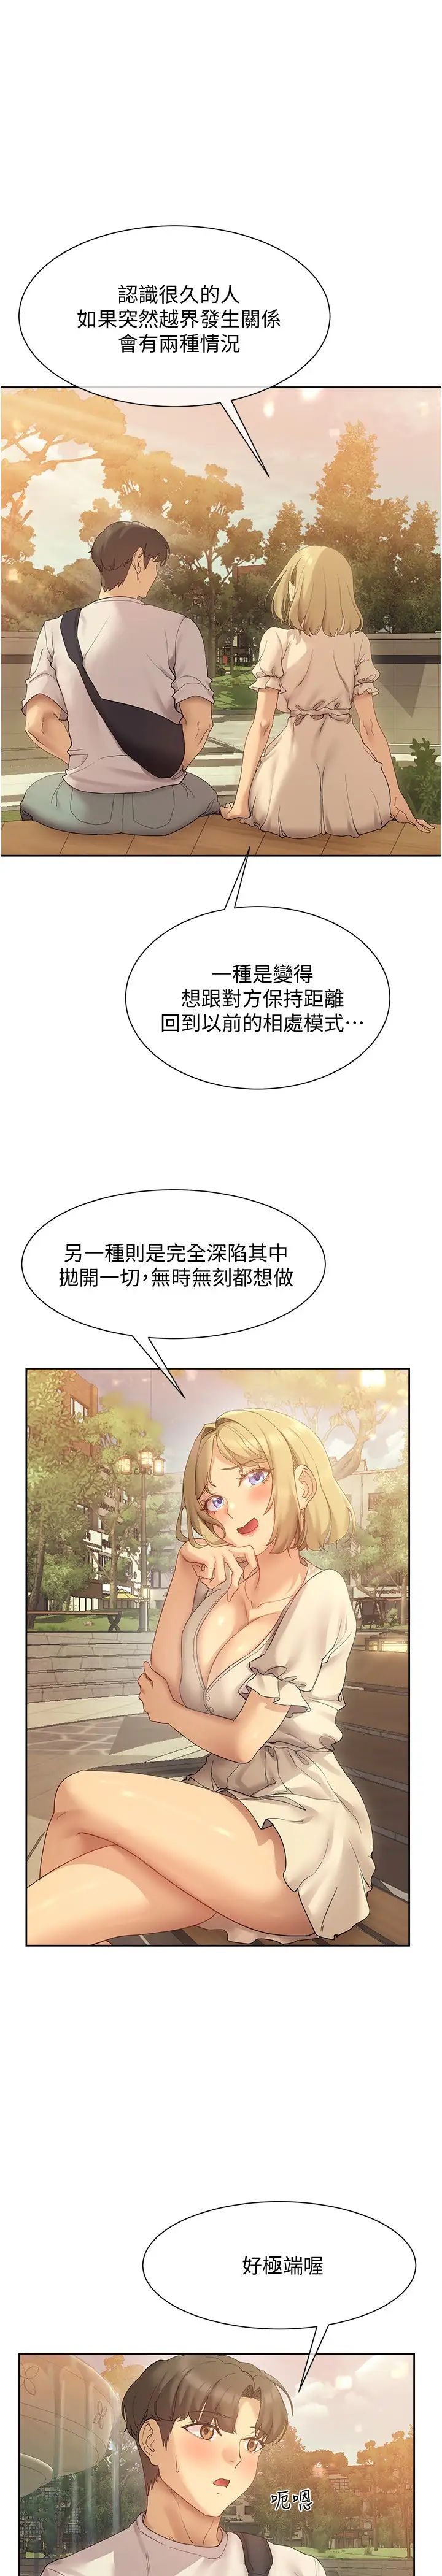 韩国污漫画 現上教學 第20话在公园里公然那个!？ 19